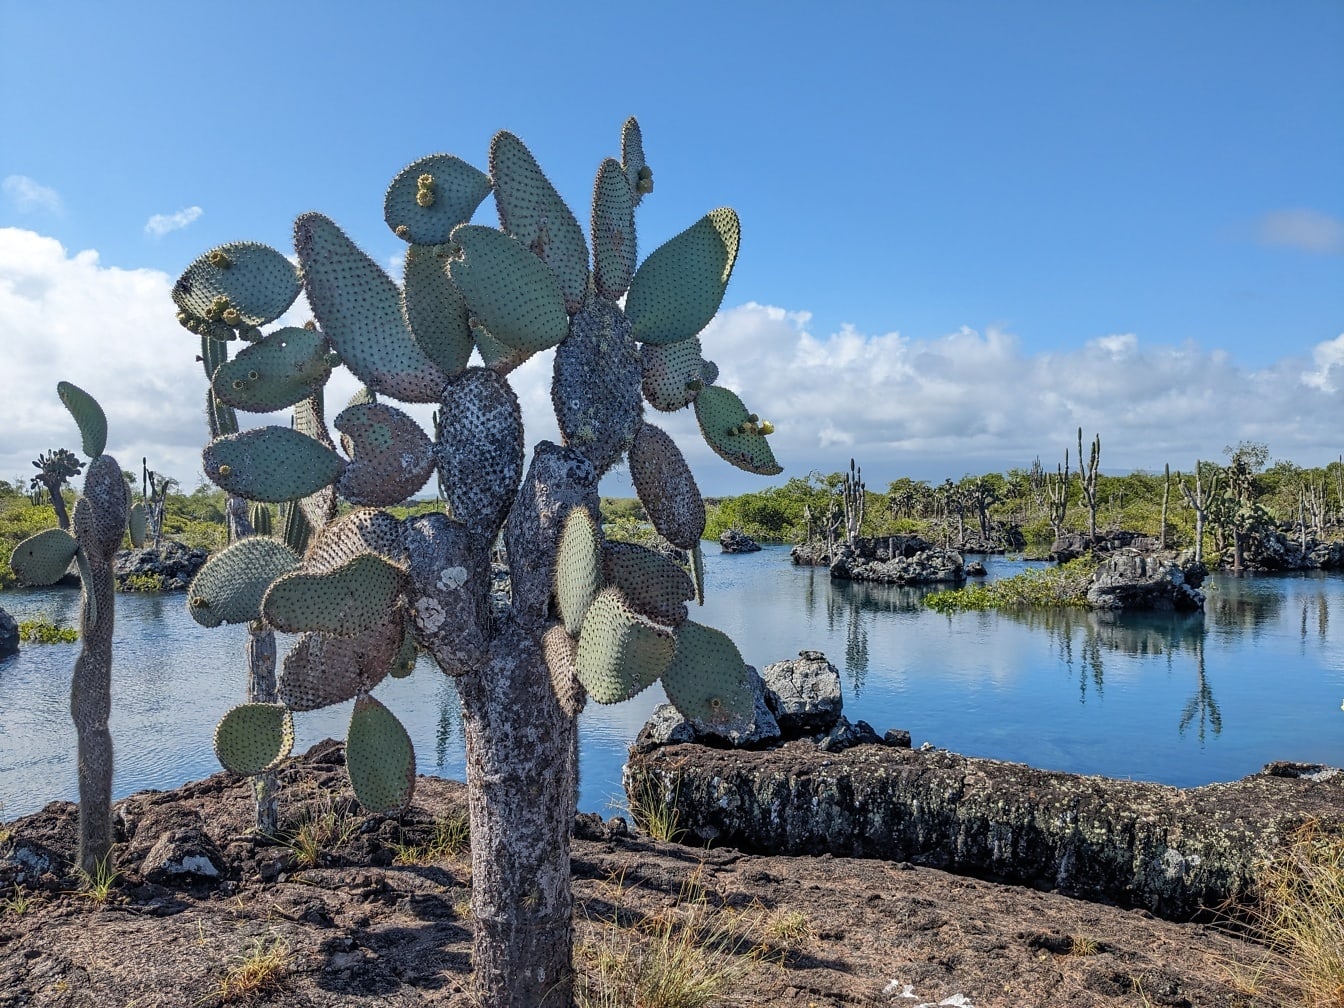 De cactusvijg, een cactussoort die endemisch is voor de Galápagos eilanden, (Opuntia galapageia)